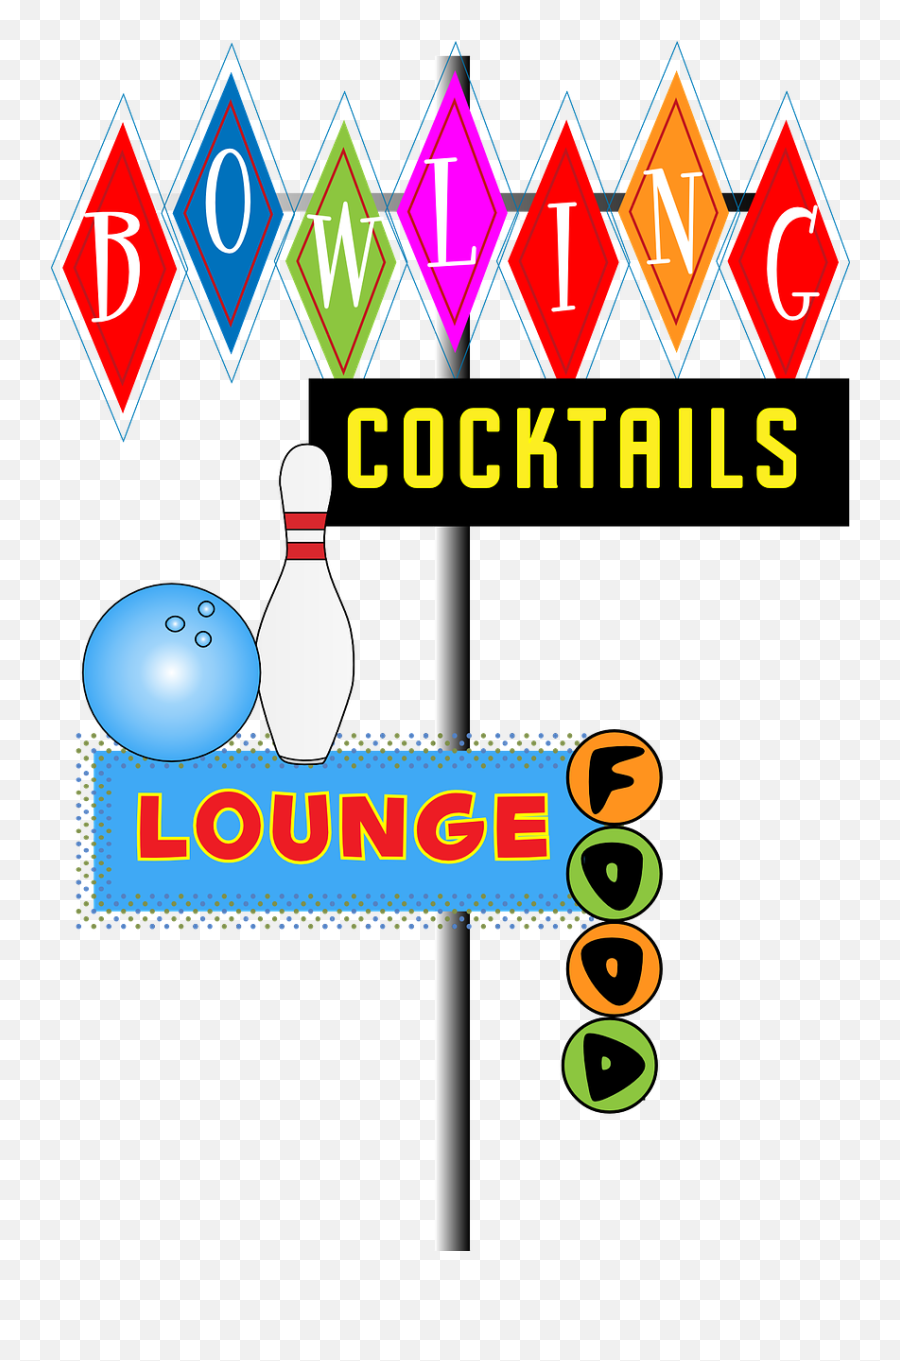 Food Bowl Lounge Bowling Png Picpng Emoji,Bowling Png